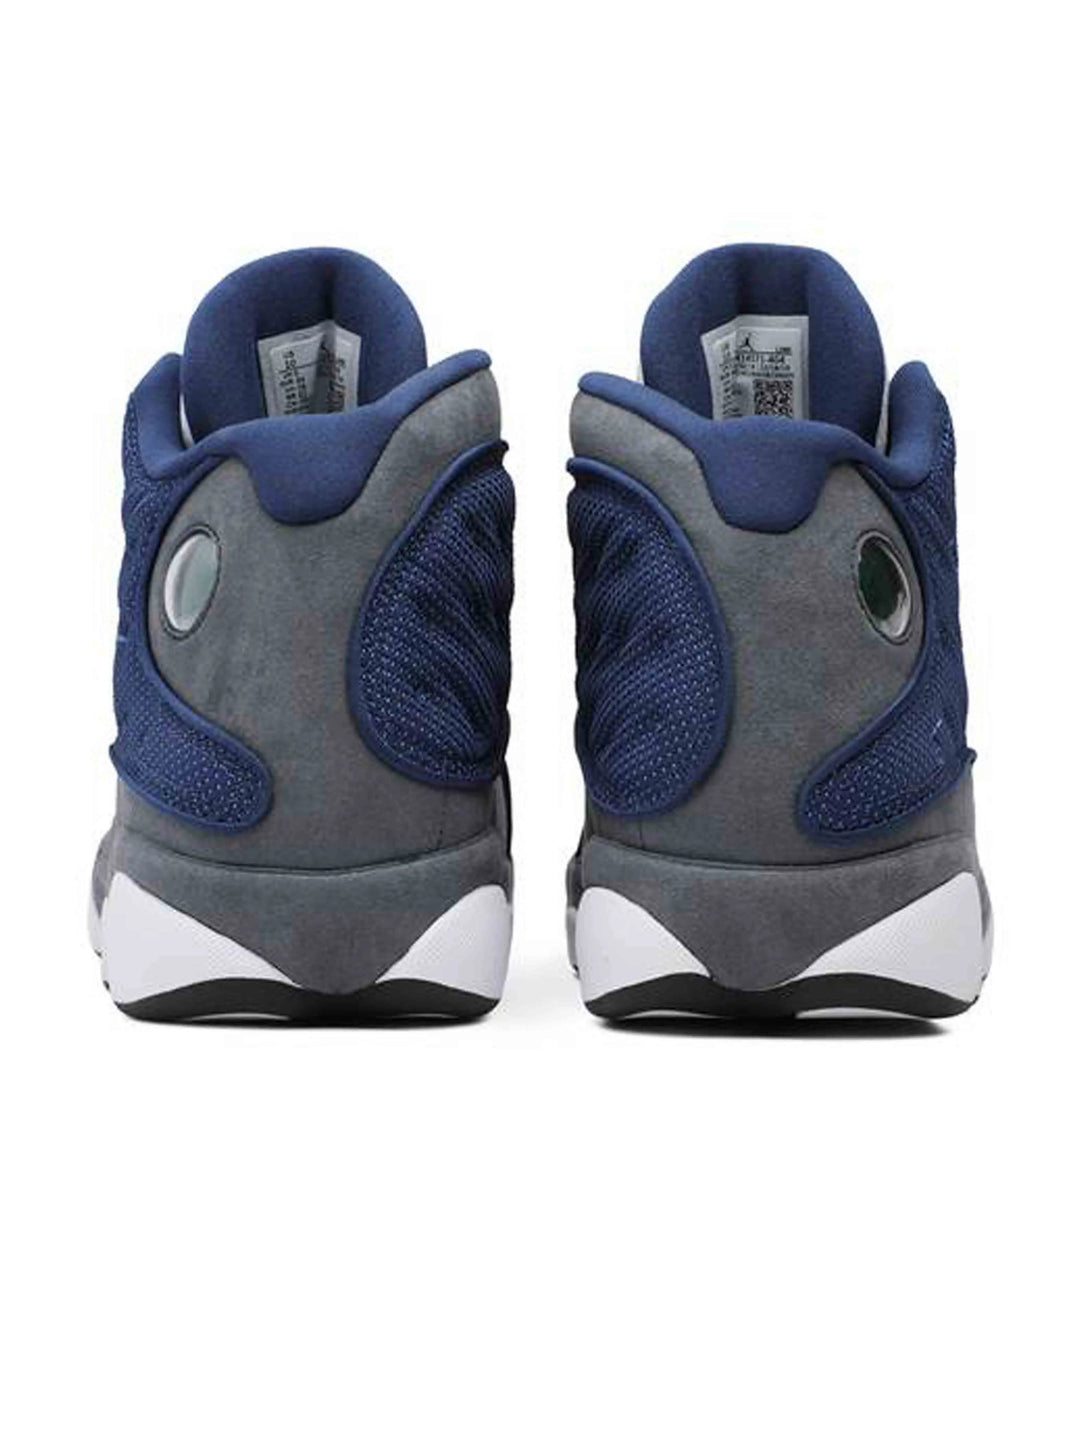 Nike Air Jordan 13 Retro Flint [2020] Prior